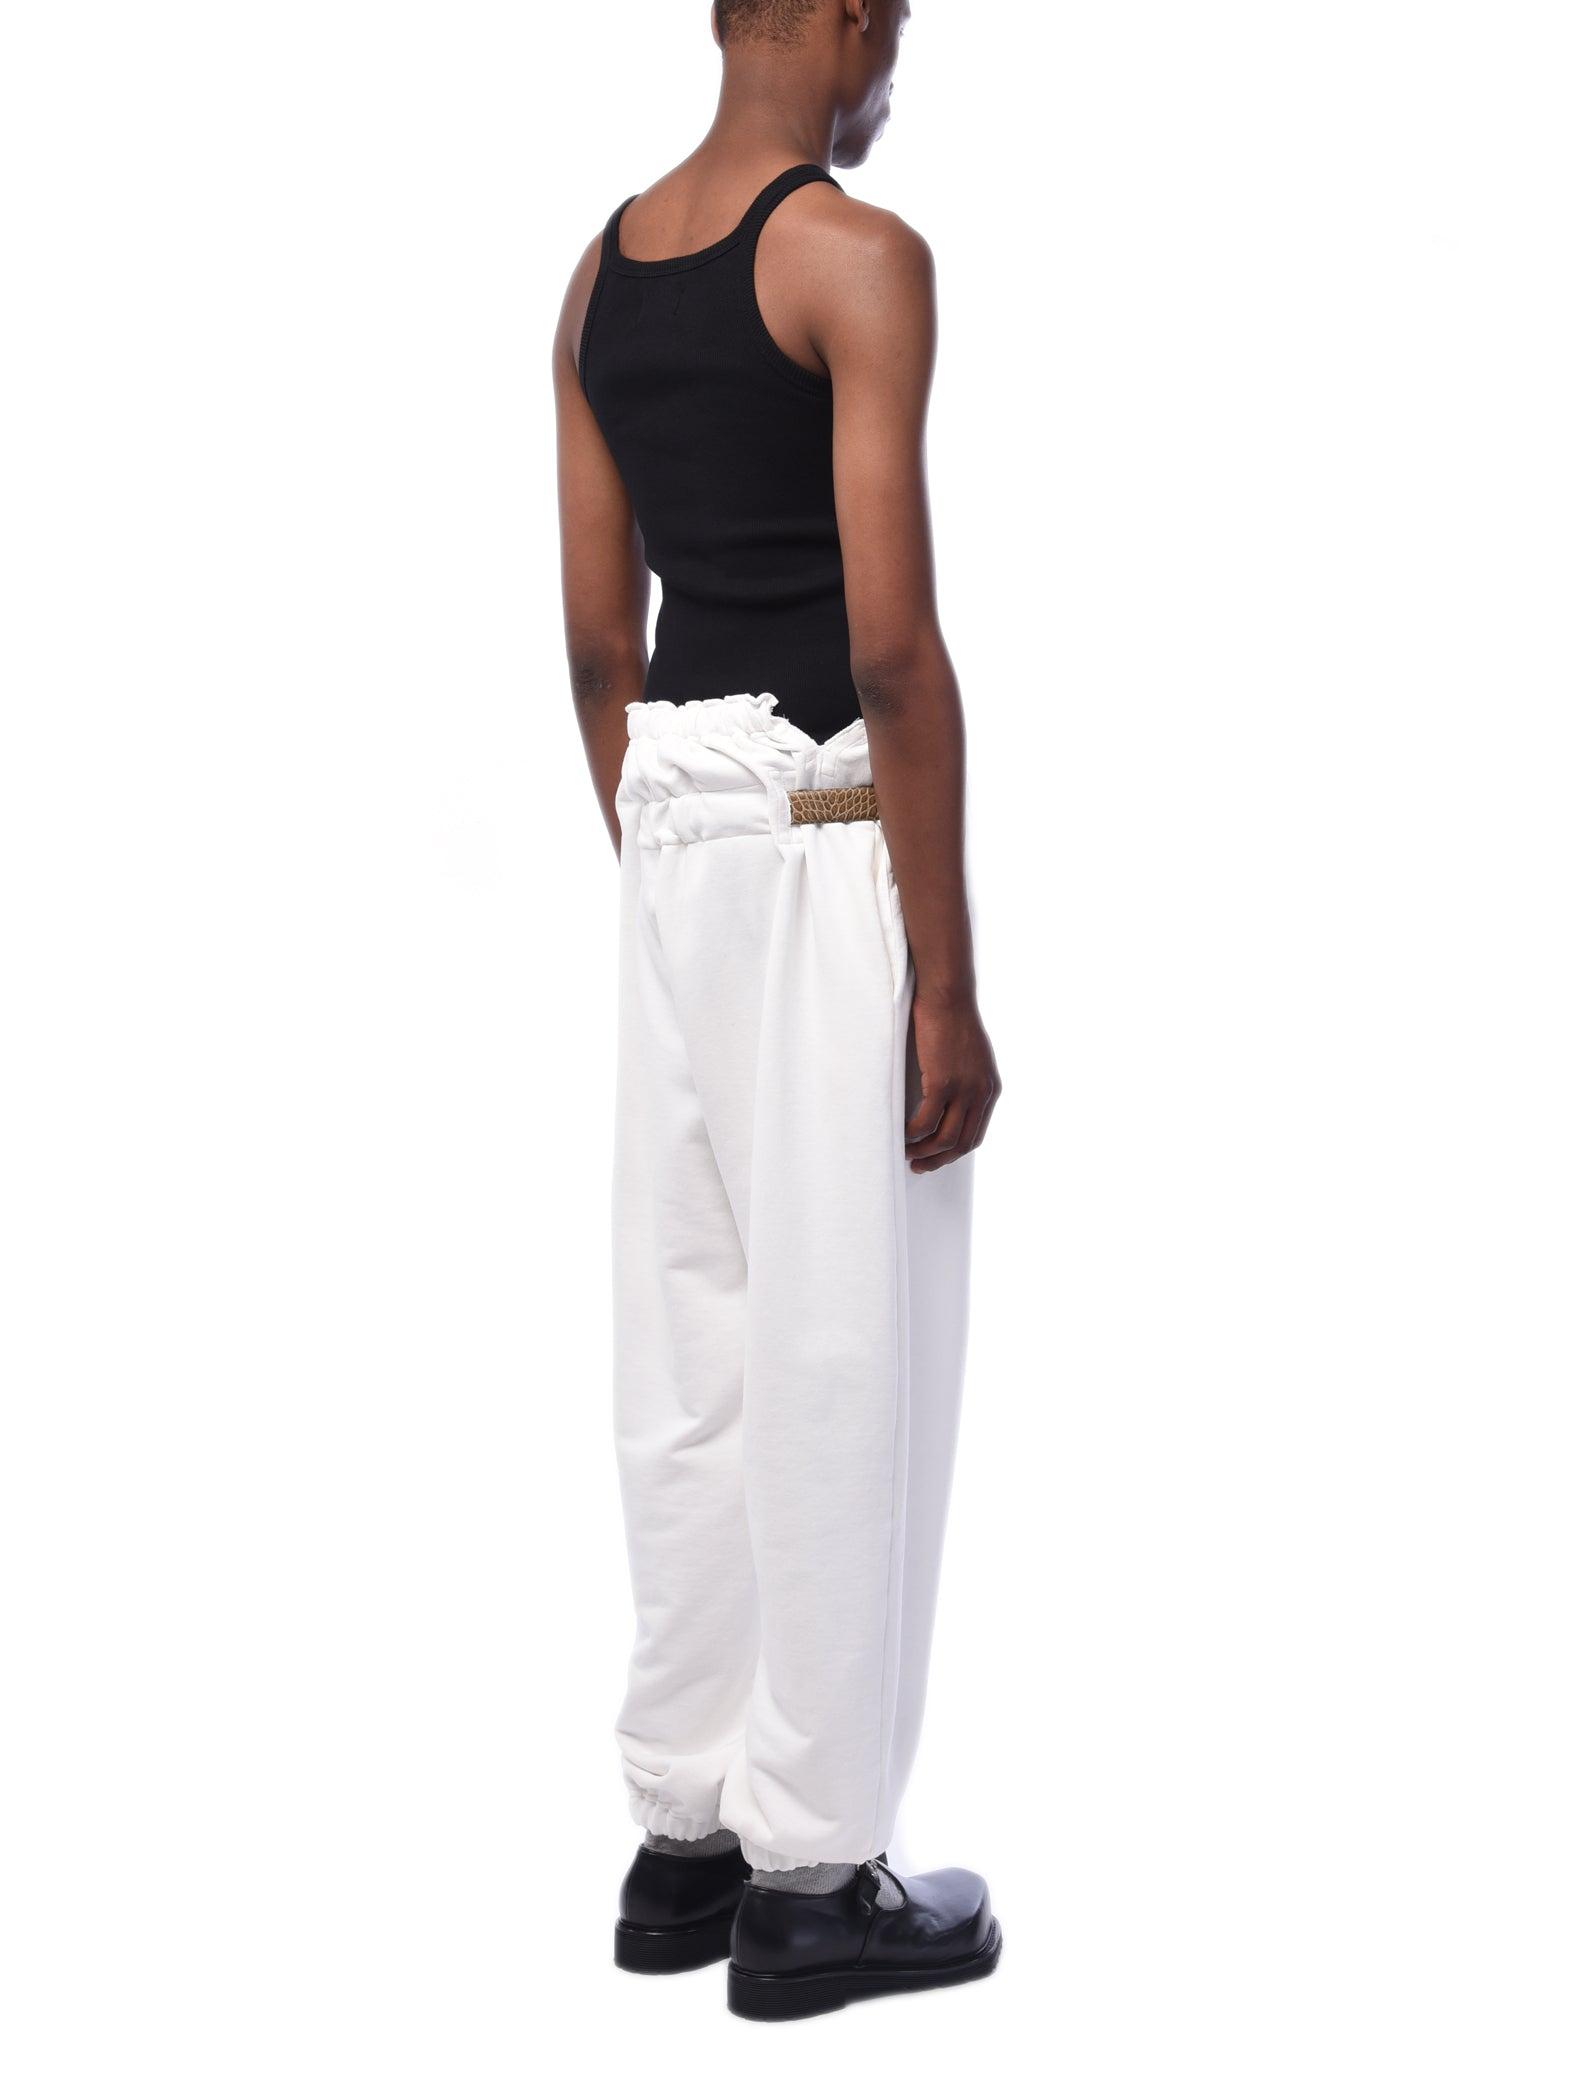 magliano sweat belt pants size:xs-